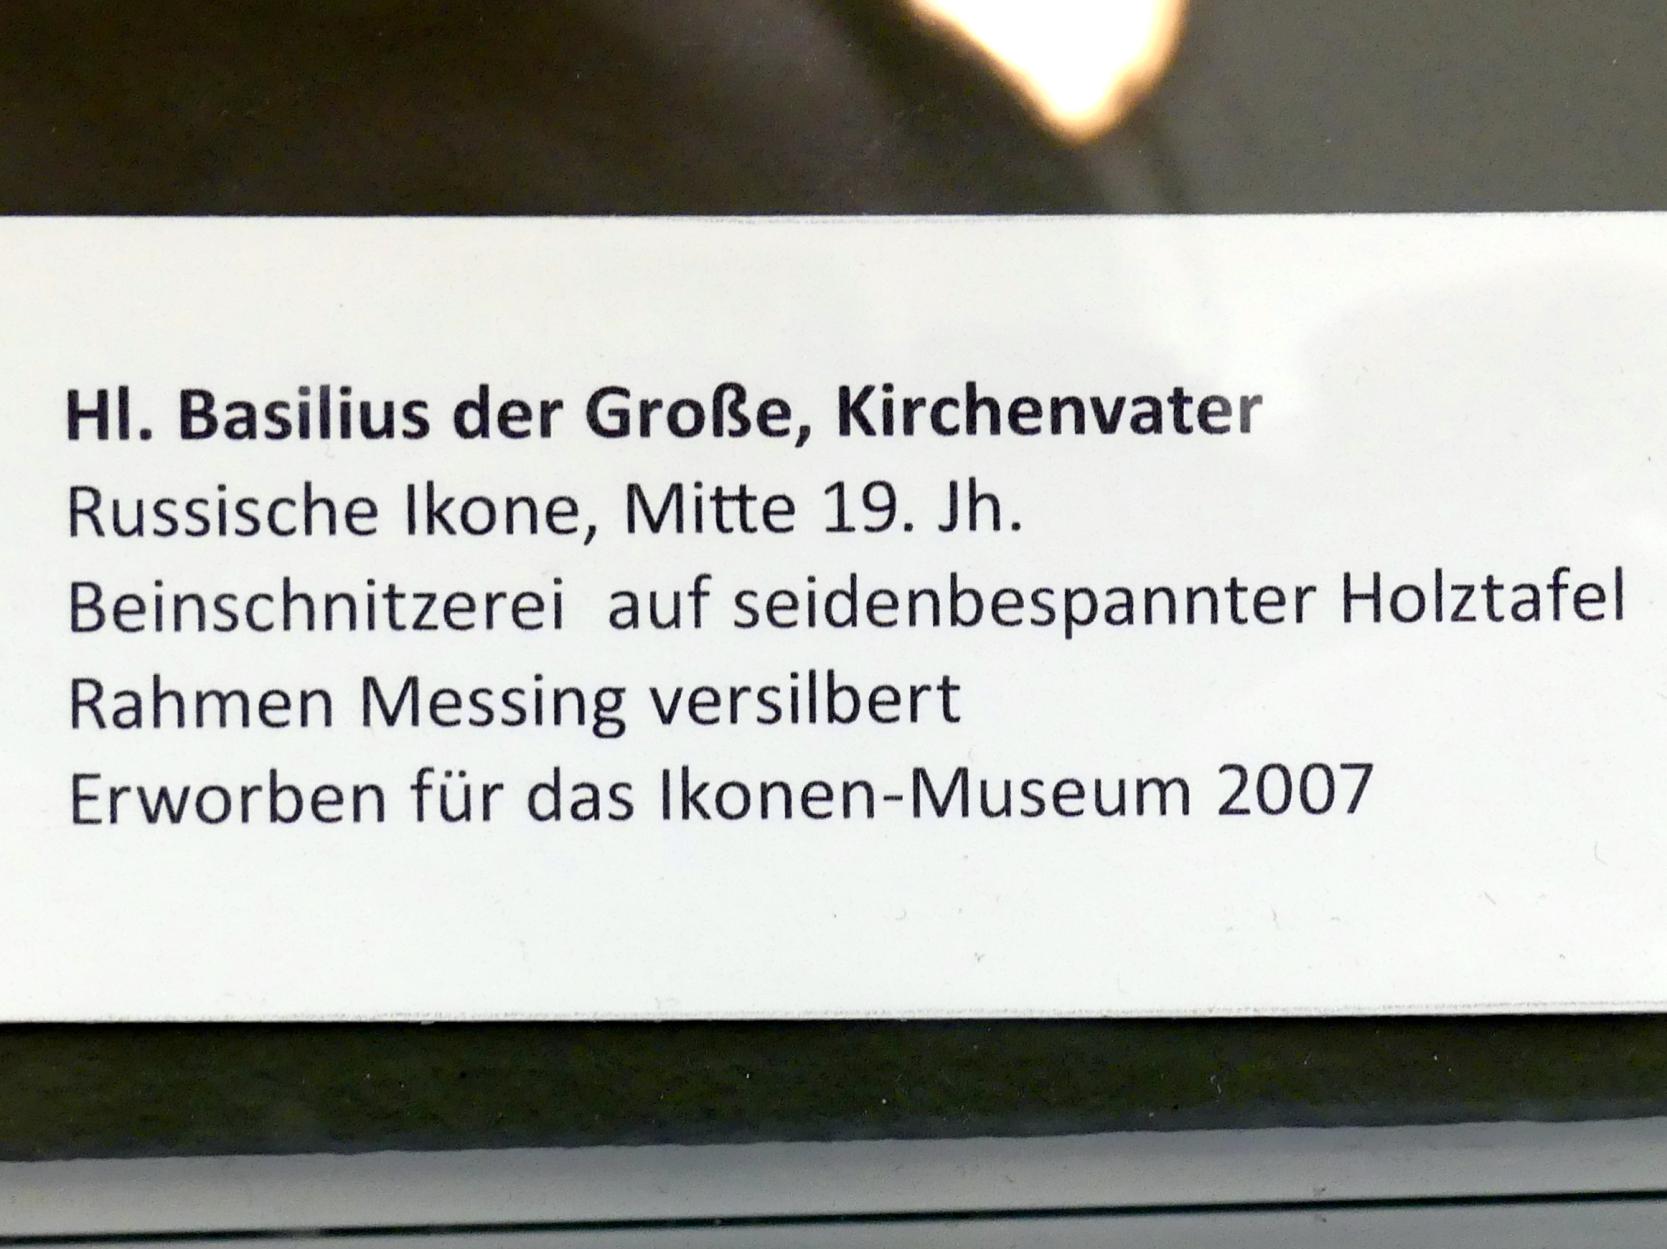 Hl. Basilius der Große, Kirchenvater, Frankfurt am Main, Ikonen-Museum, Erdgeschoss, Mitte 19. Jhd., Bild 2/2